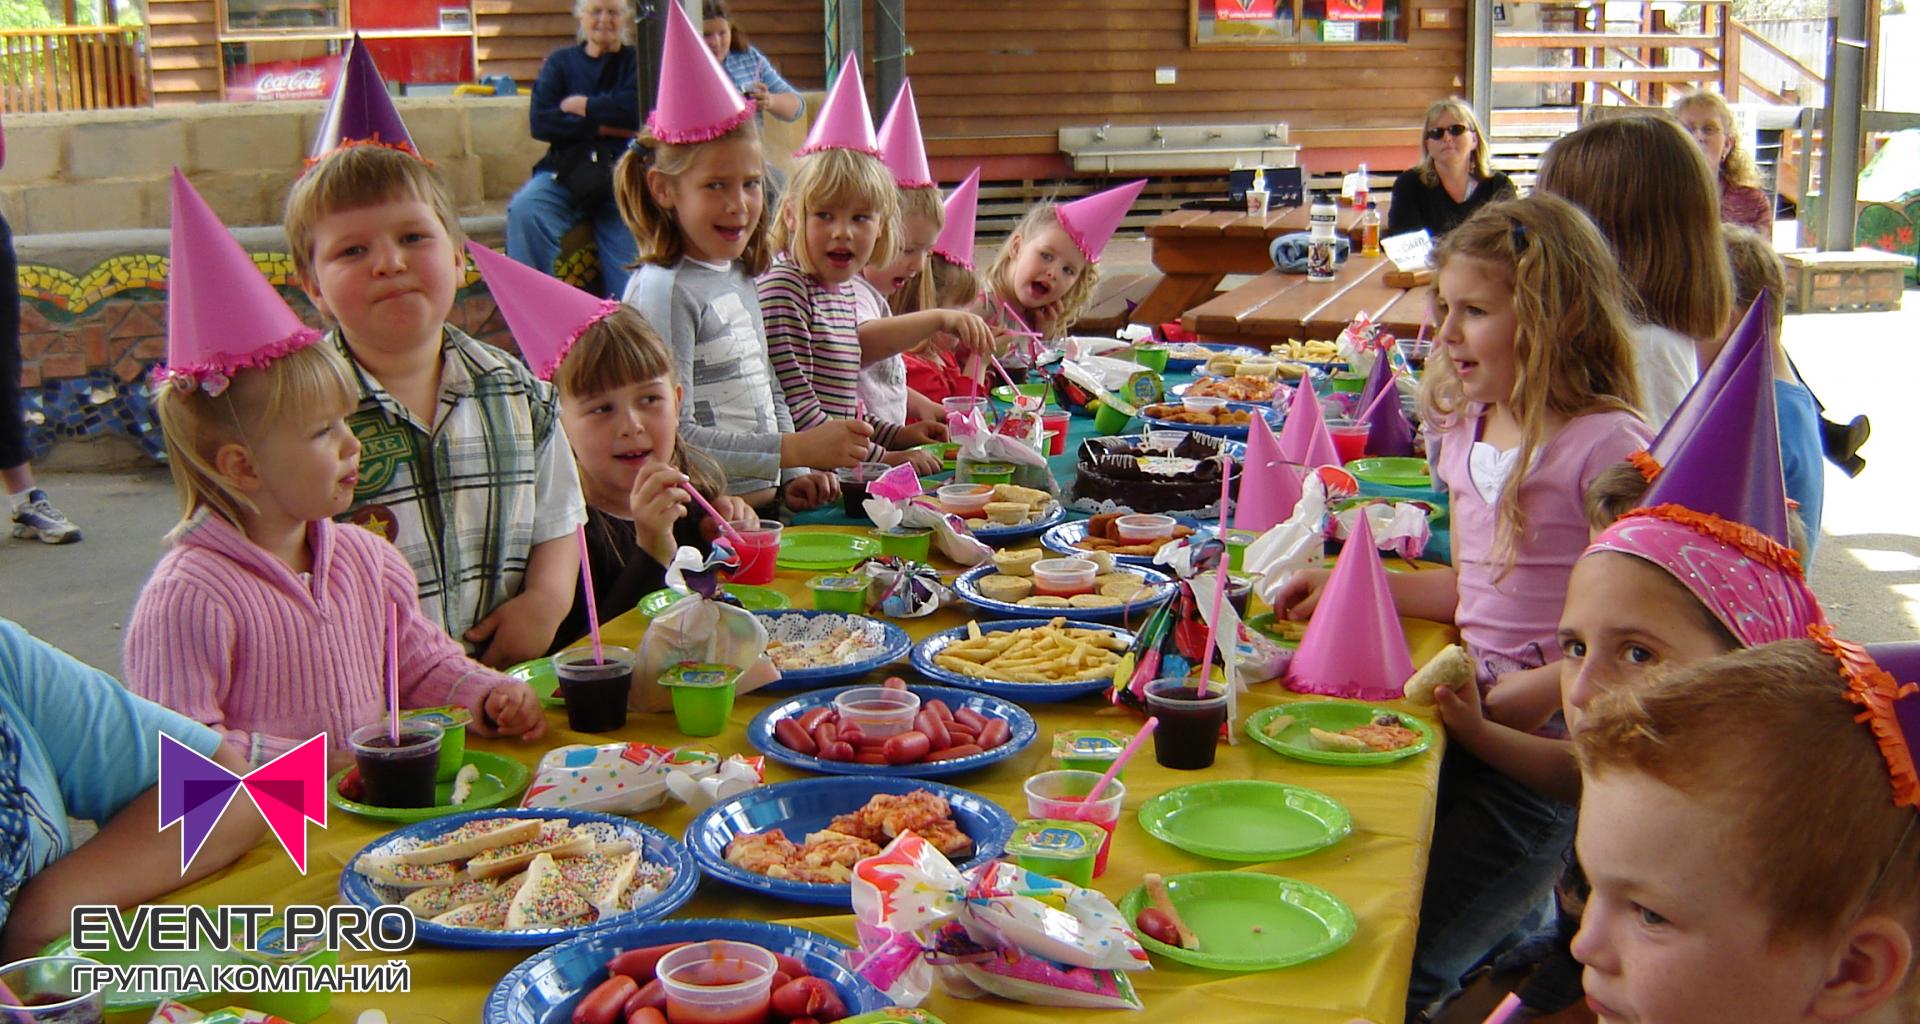 Др ребенку дома. Детский стол на день рождения. Праздничный стол для детей. Детский стол на праздник. Детский праздничный стол на день рождения.